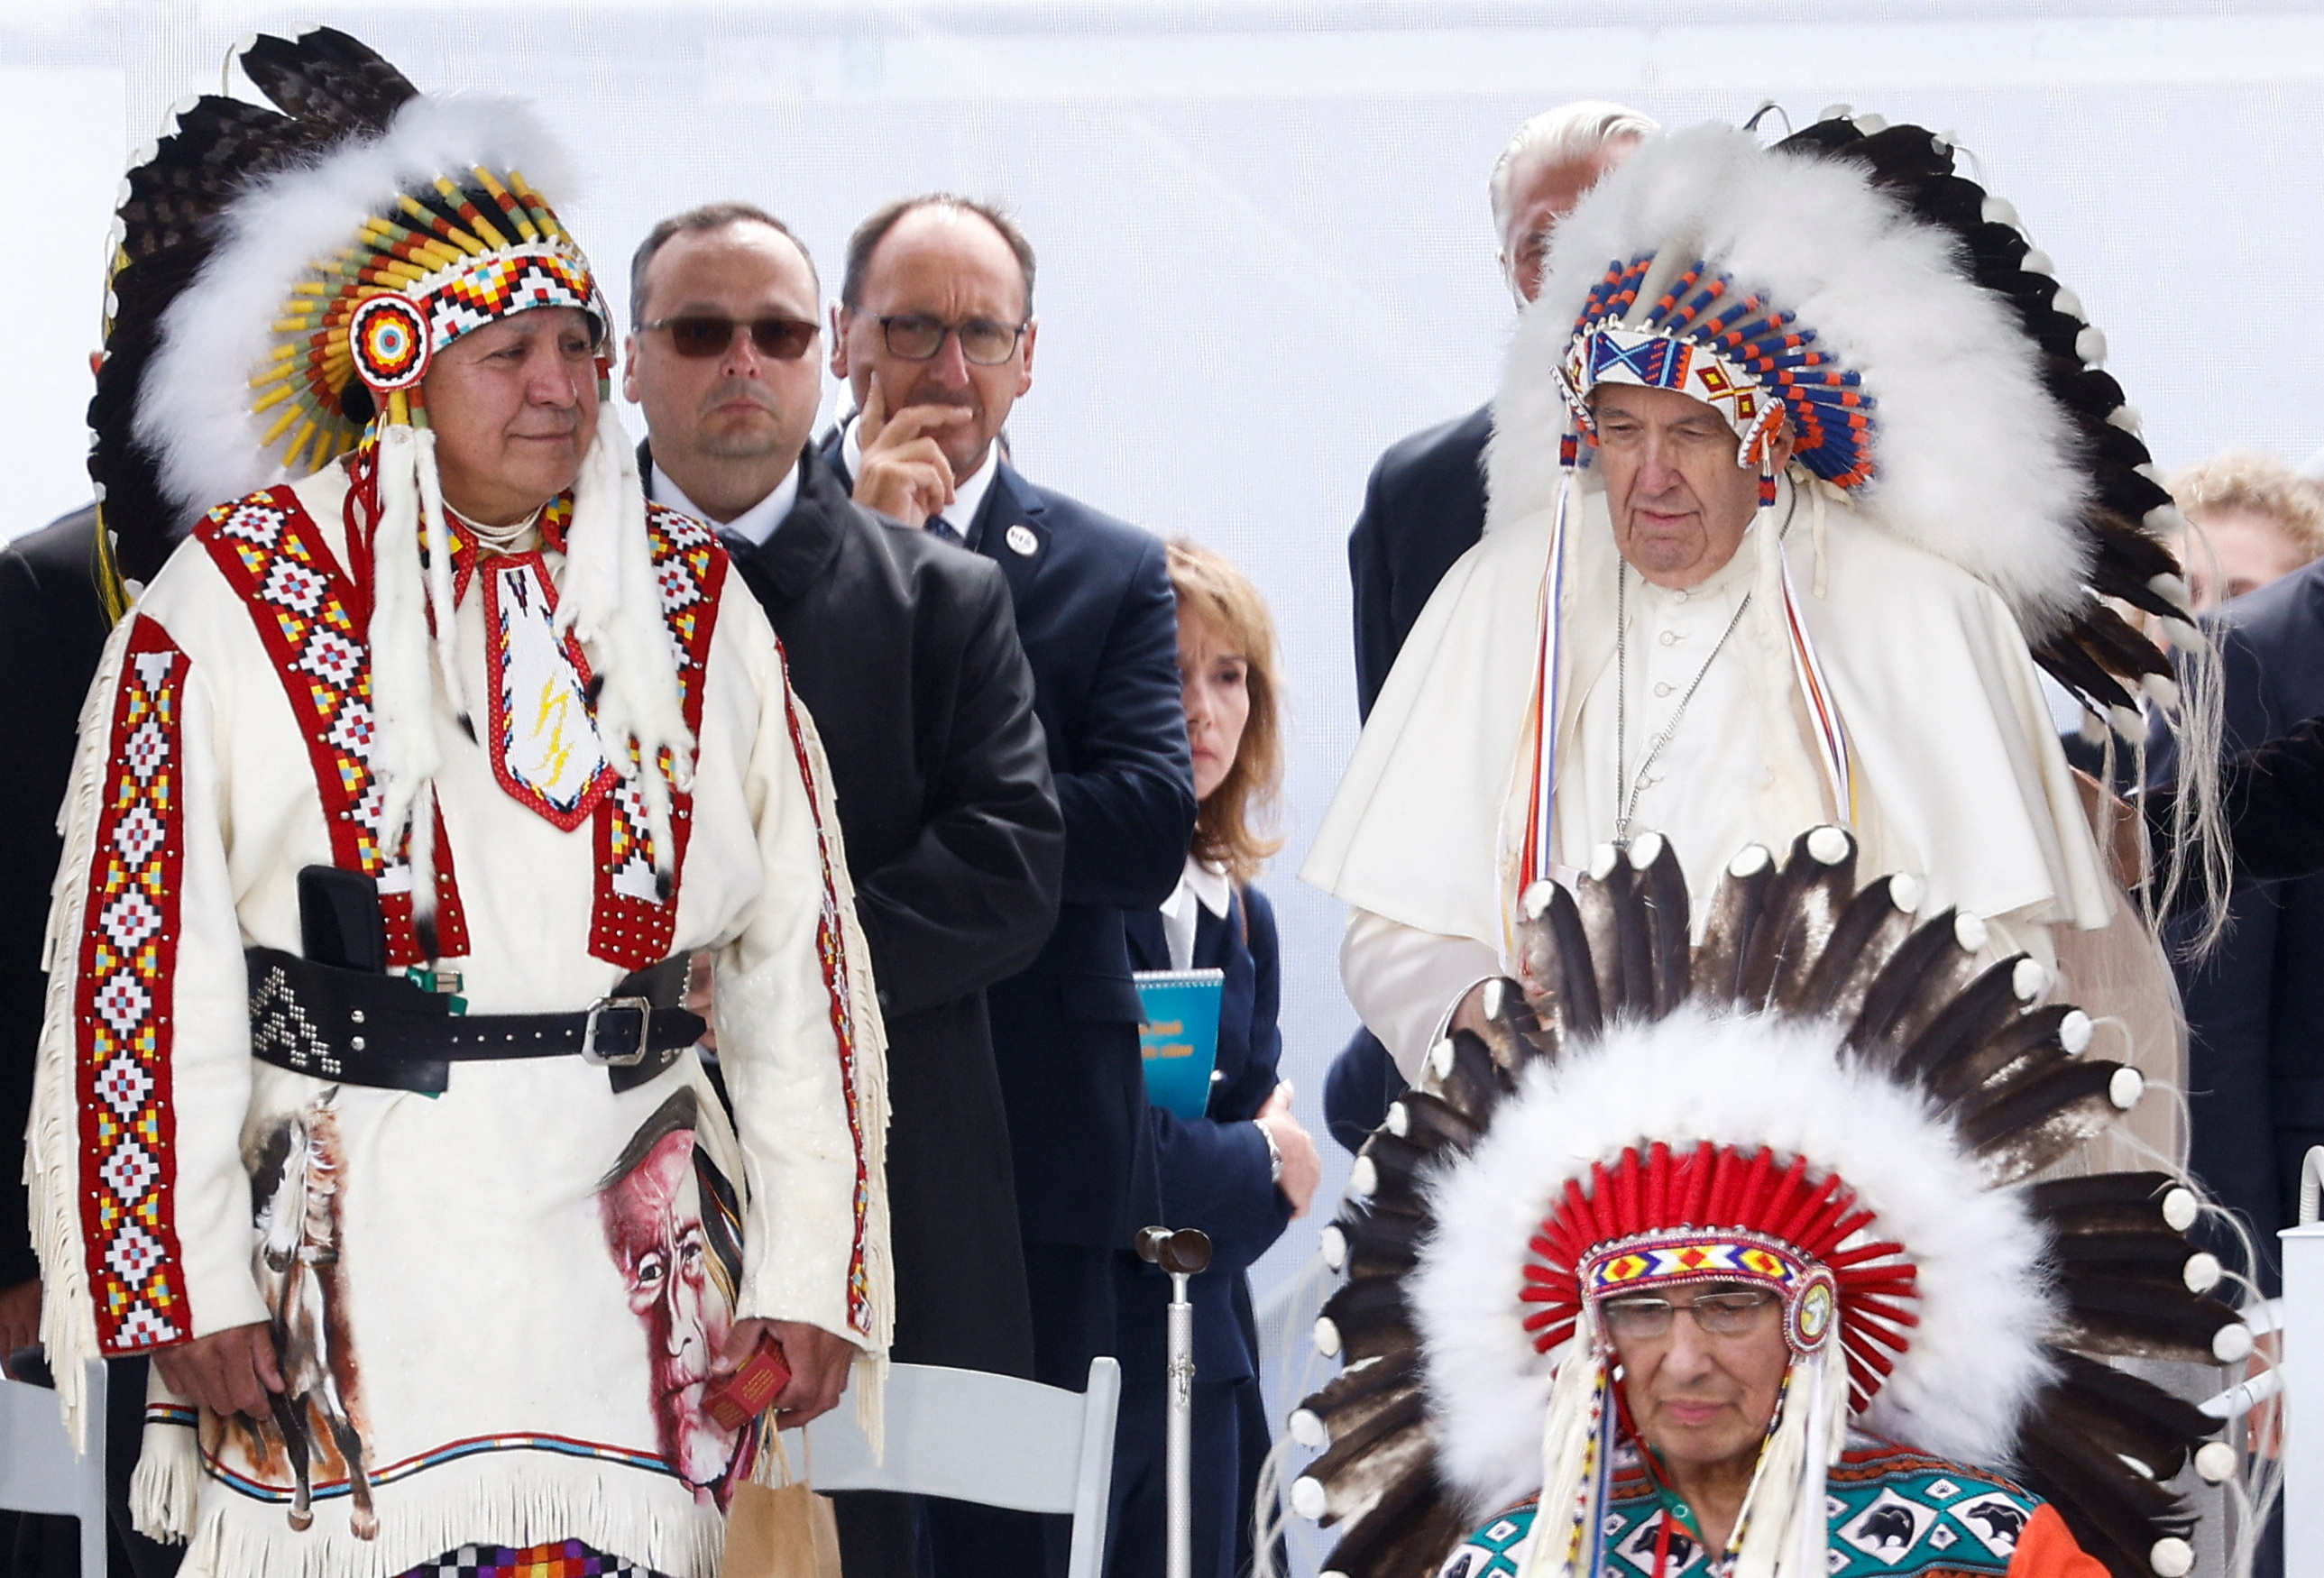 Representantes de los pueblos indígenas de Canadá le entregaron al papa Francisco la tradicional corona de plumas, utilizadas por los líderes de esas comunidades (REUTERS/Guglielmo Mangiapane)